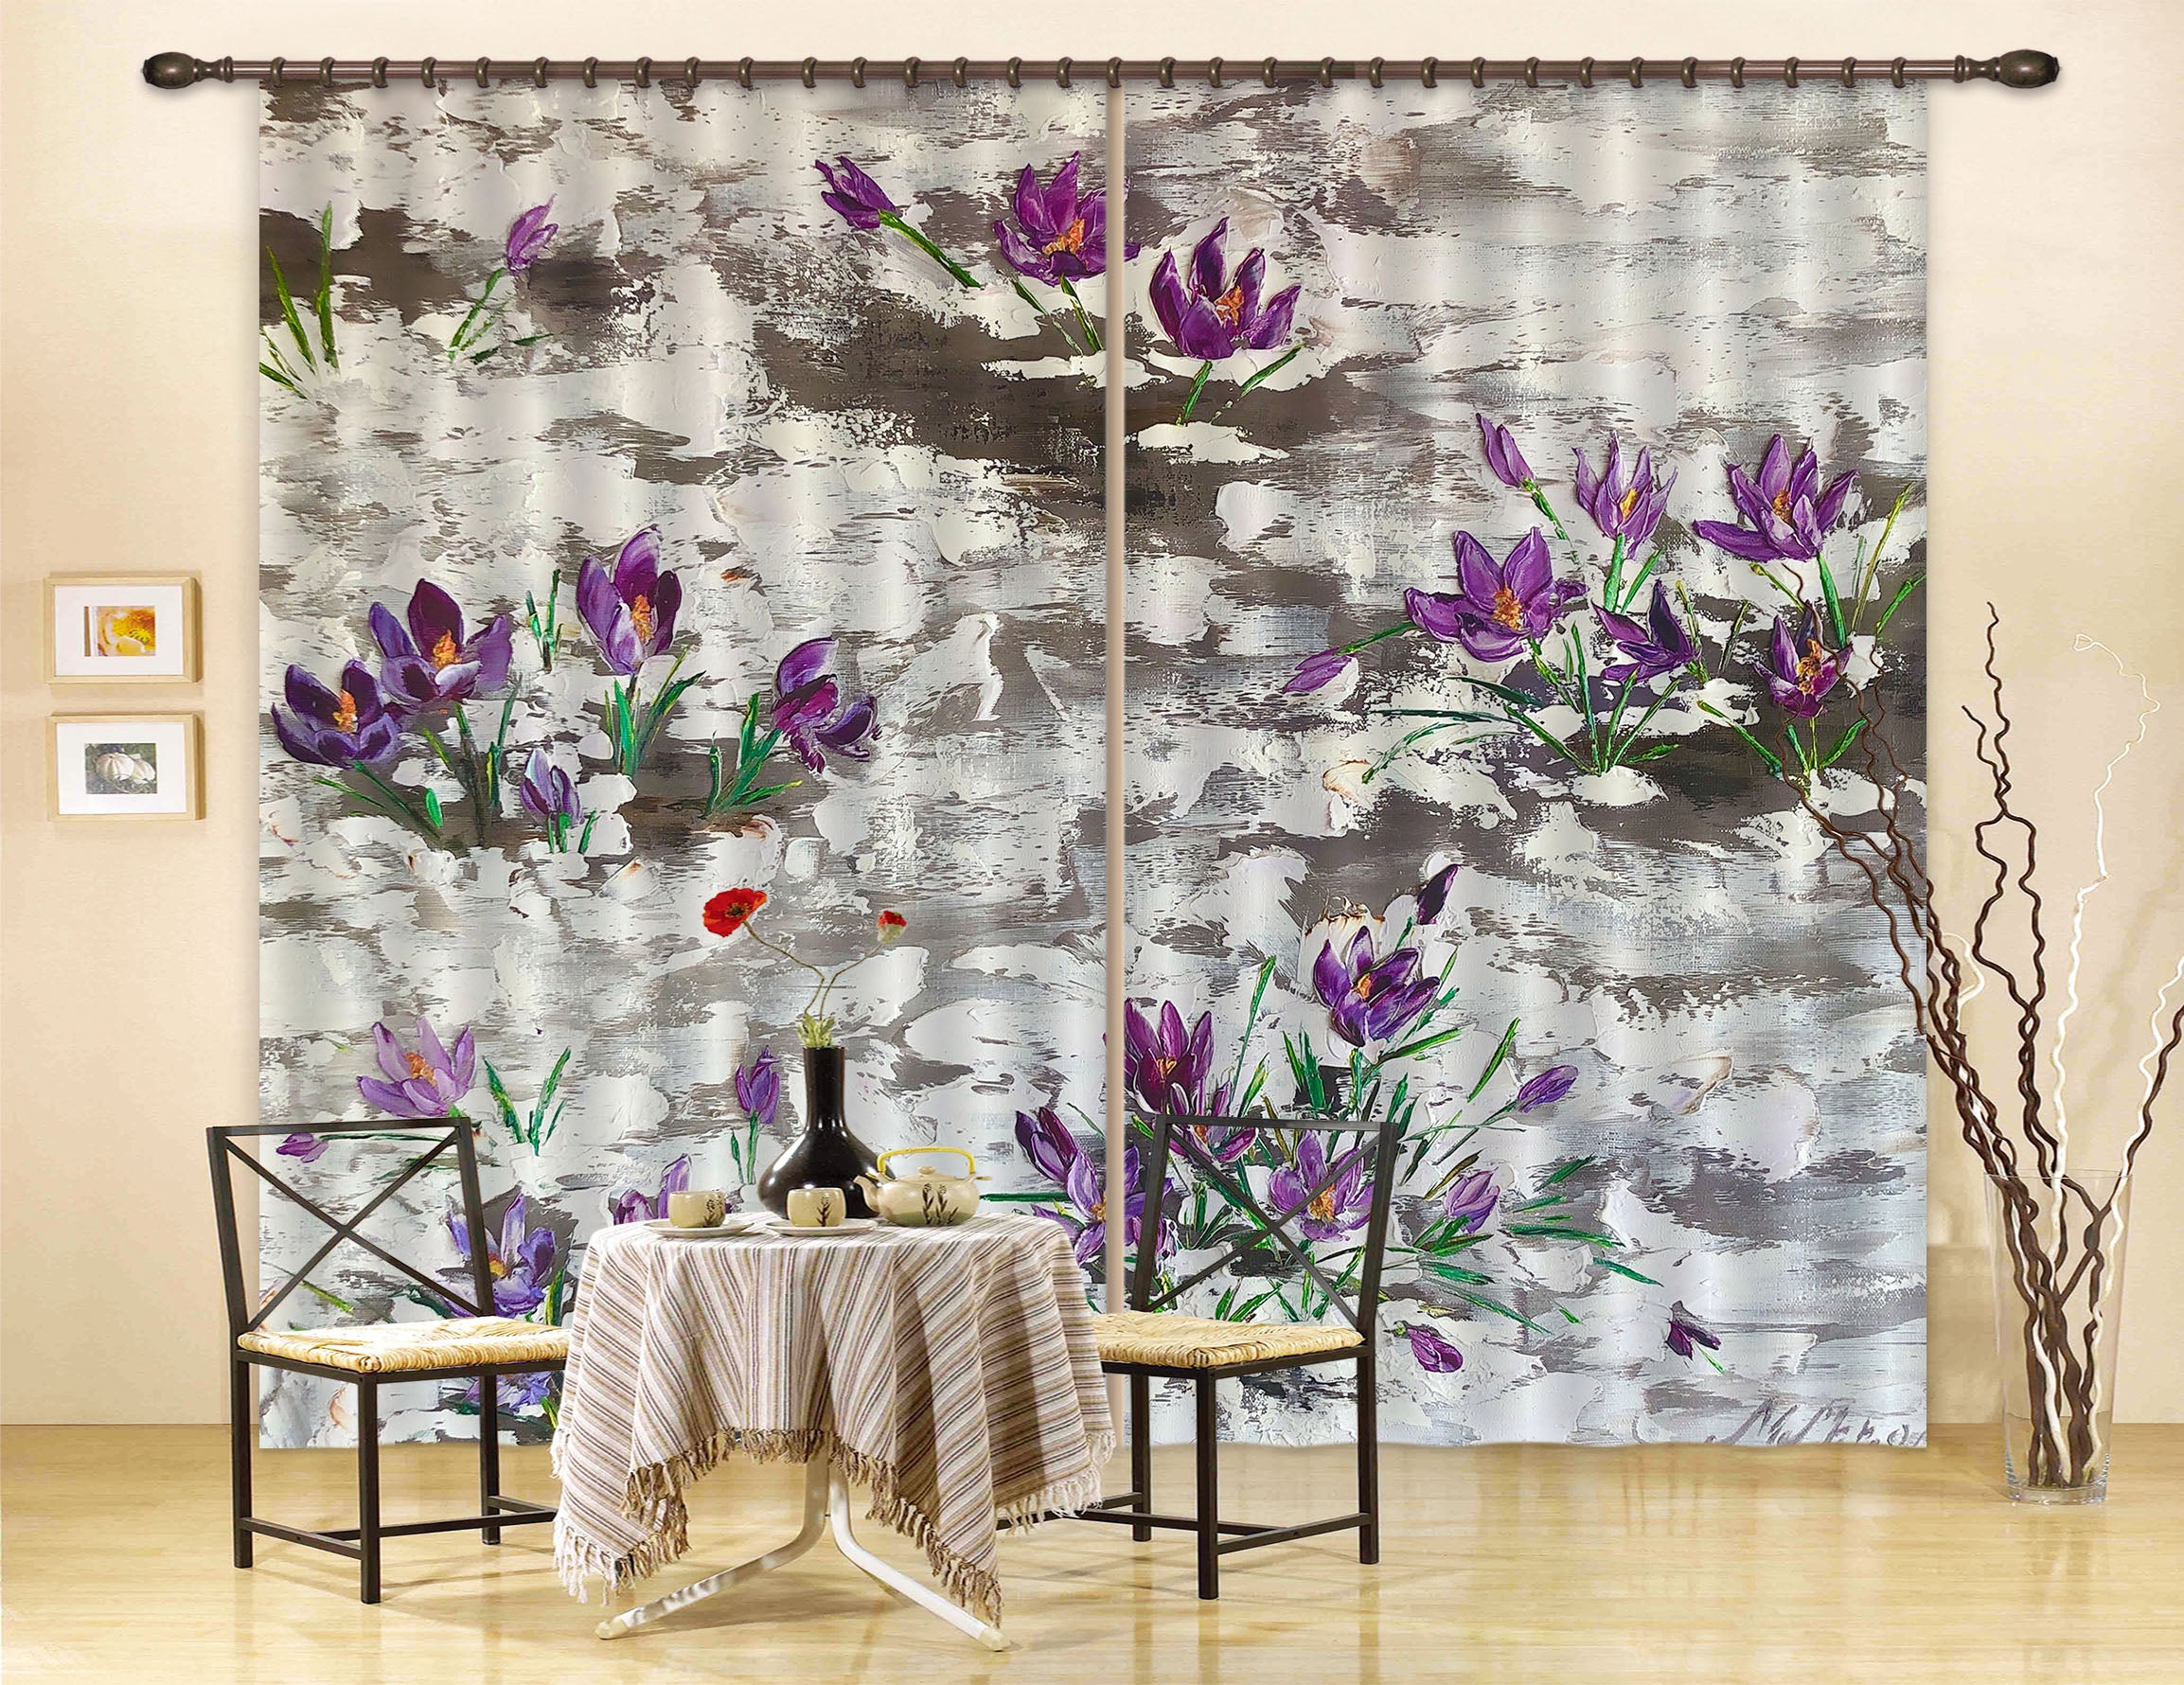 3D Purple Painted Flowers 2323 Skromova Marina Curtain Curtains Drapes